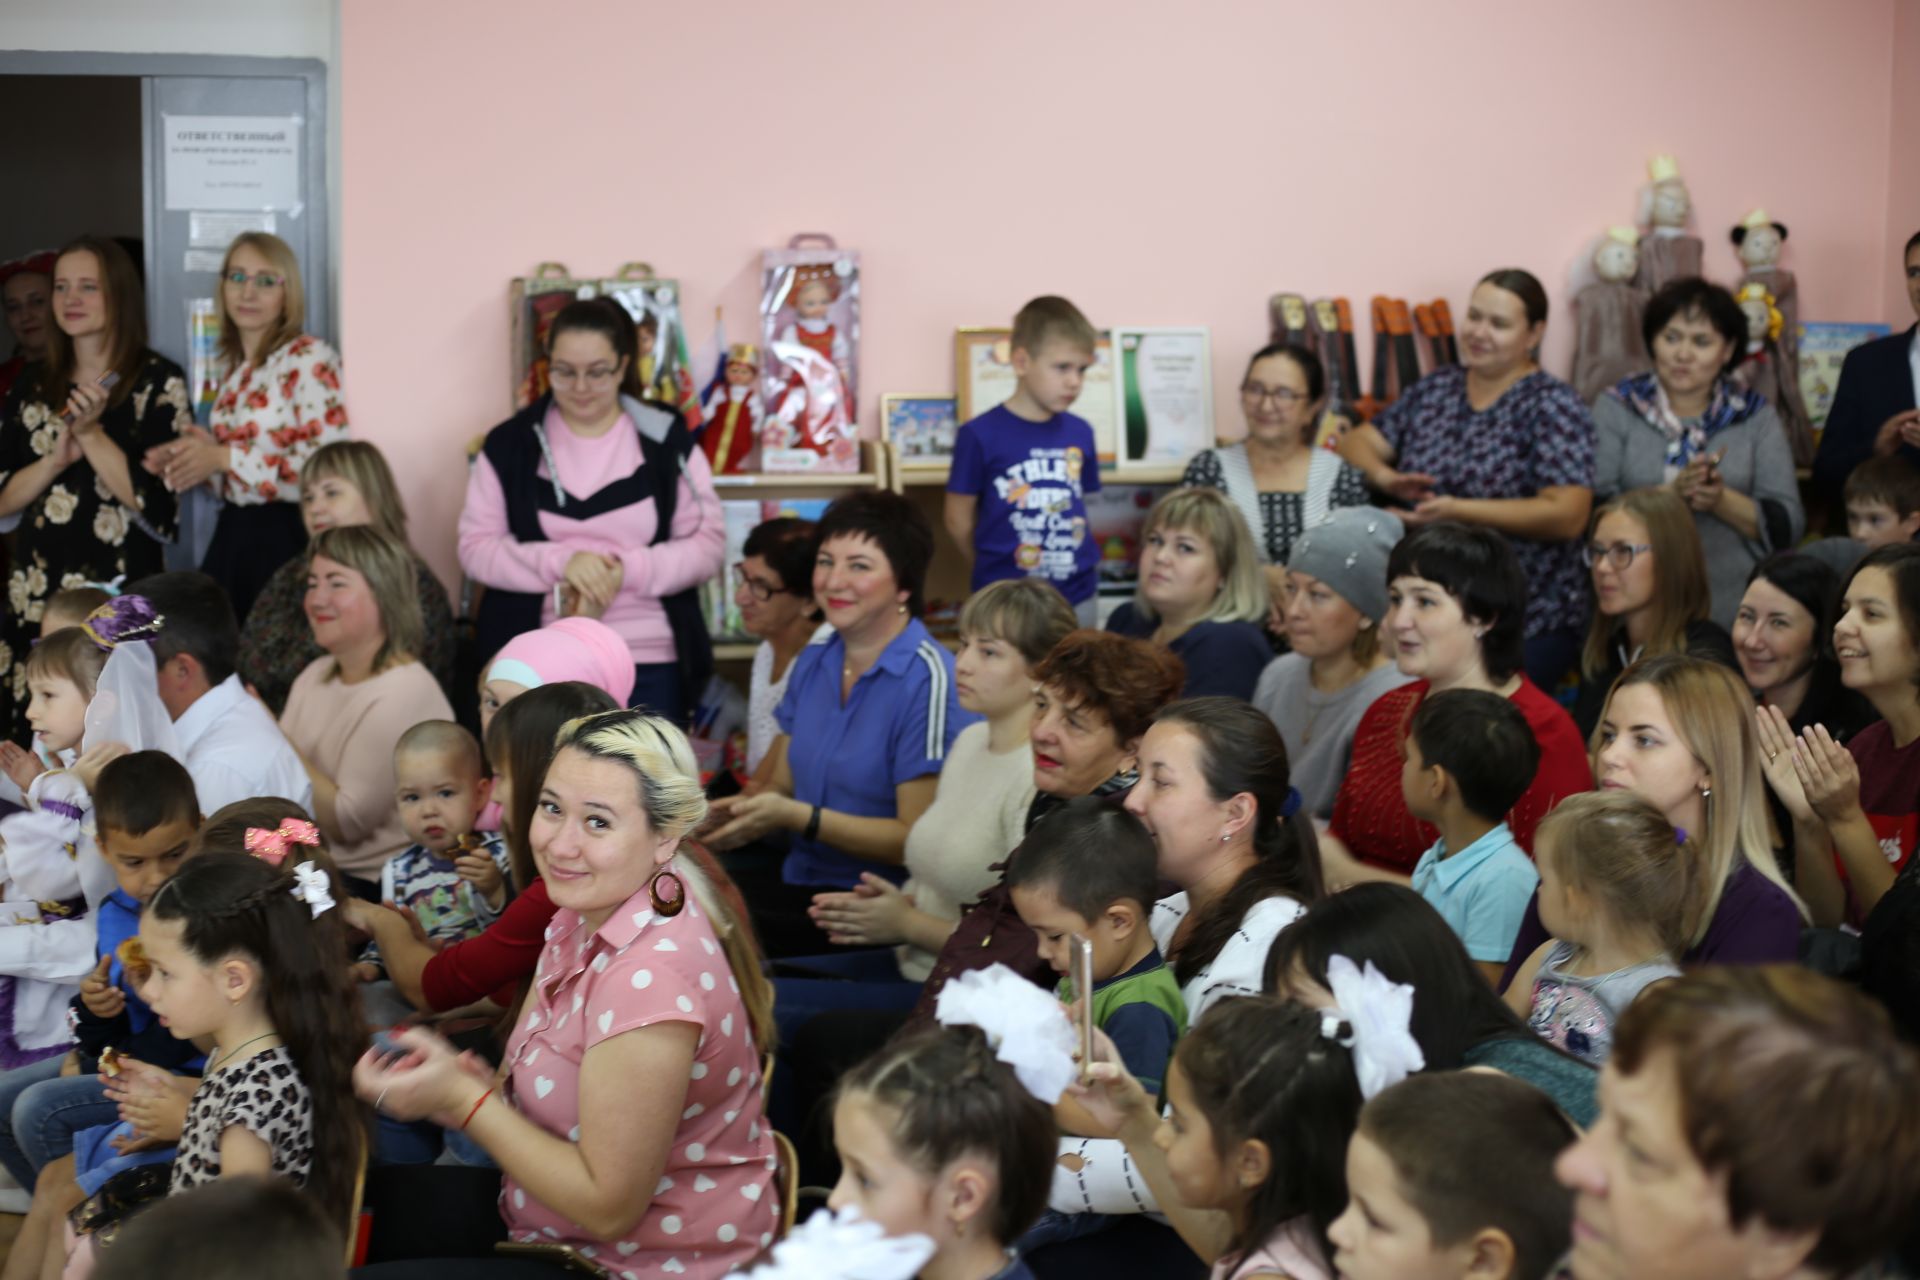 Фоторепортаж: семейным фестивалем детский сад «Пчелка» отметил свое пятилетие